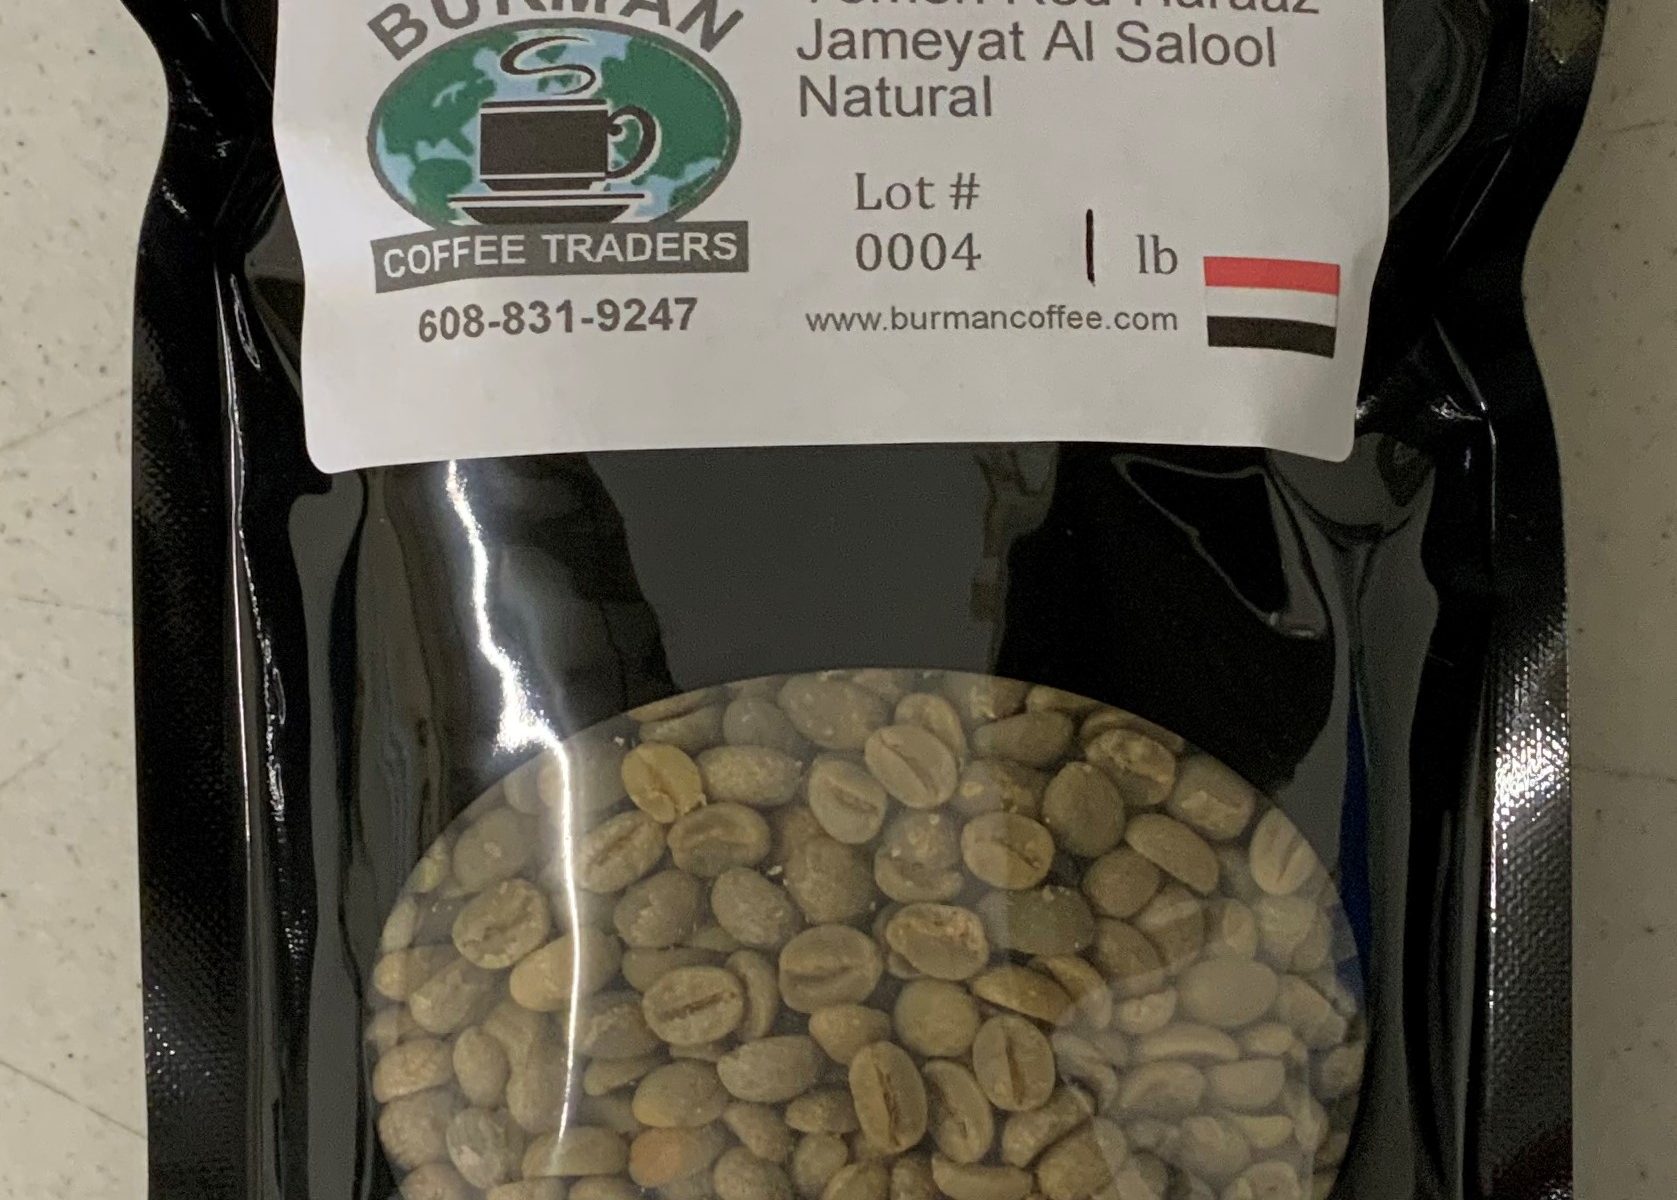 yemen jameyat al salool raw coffee beans